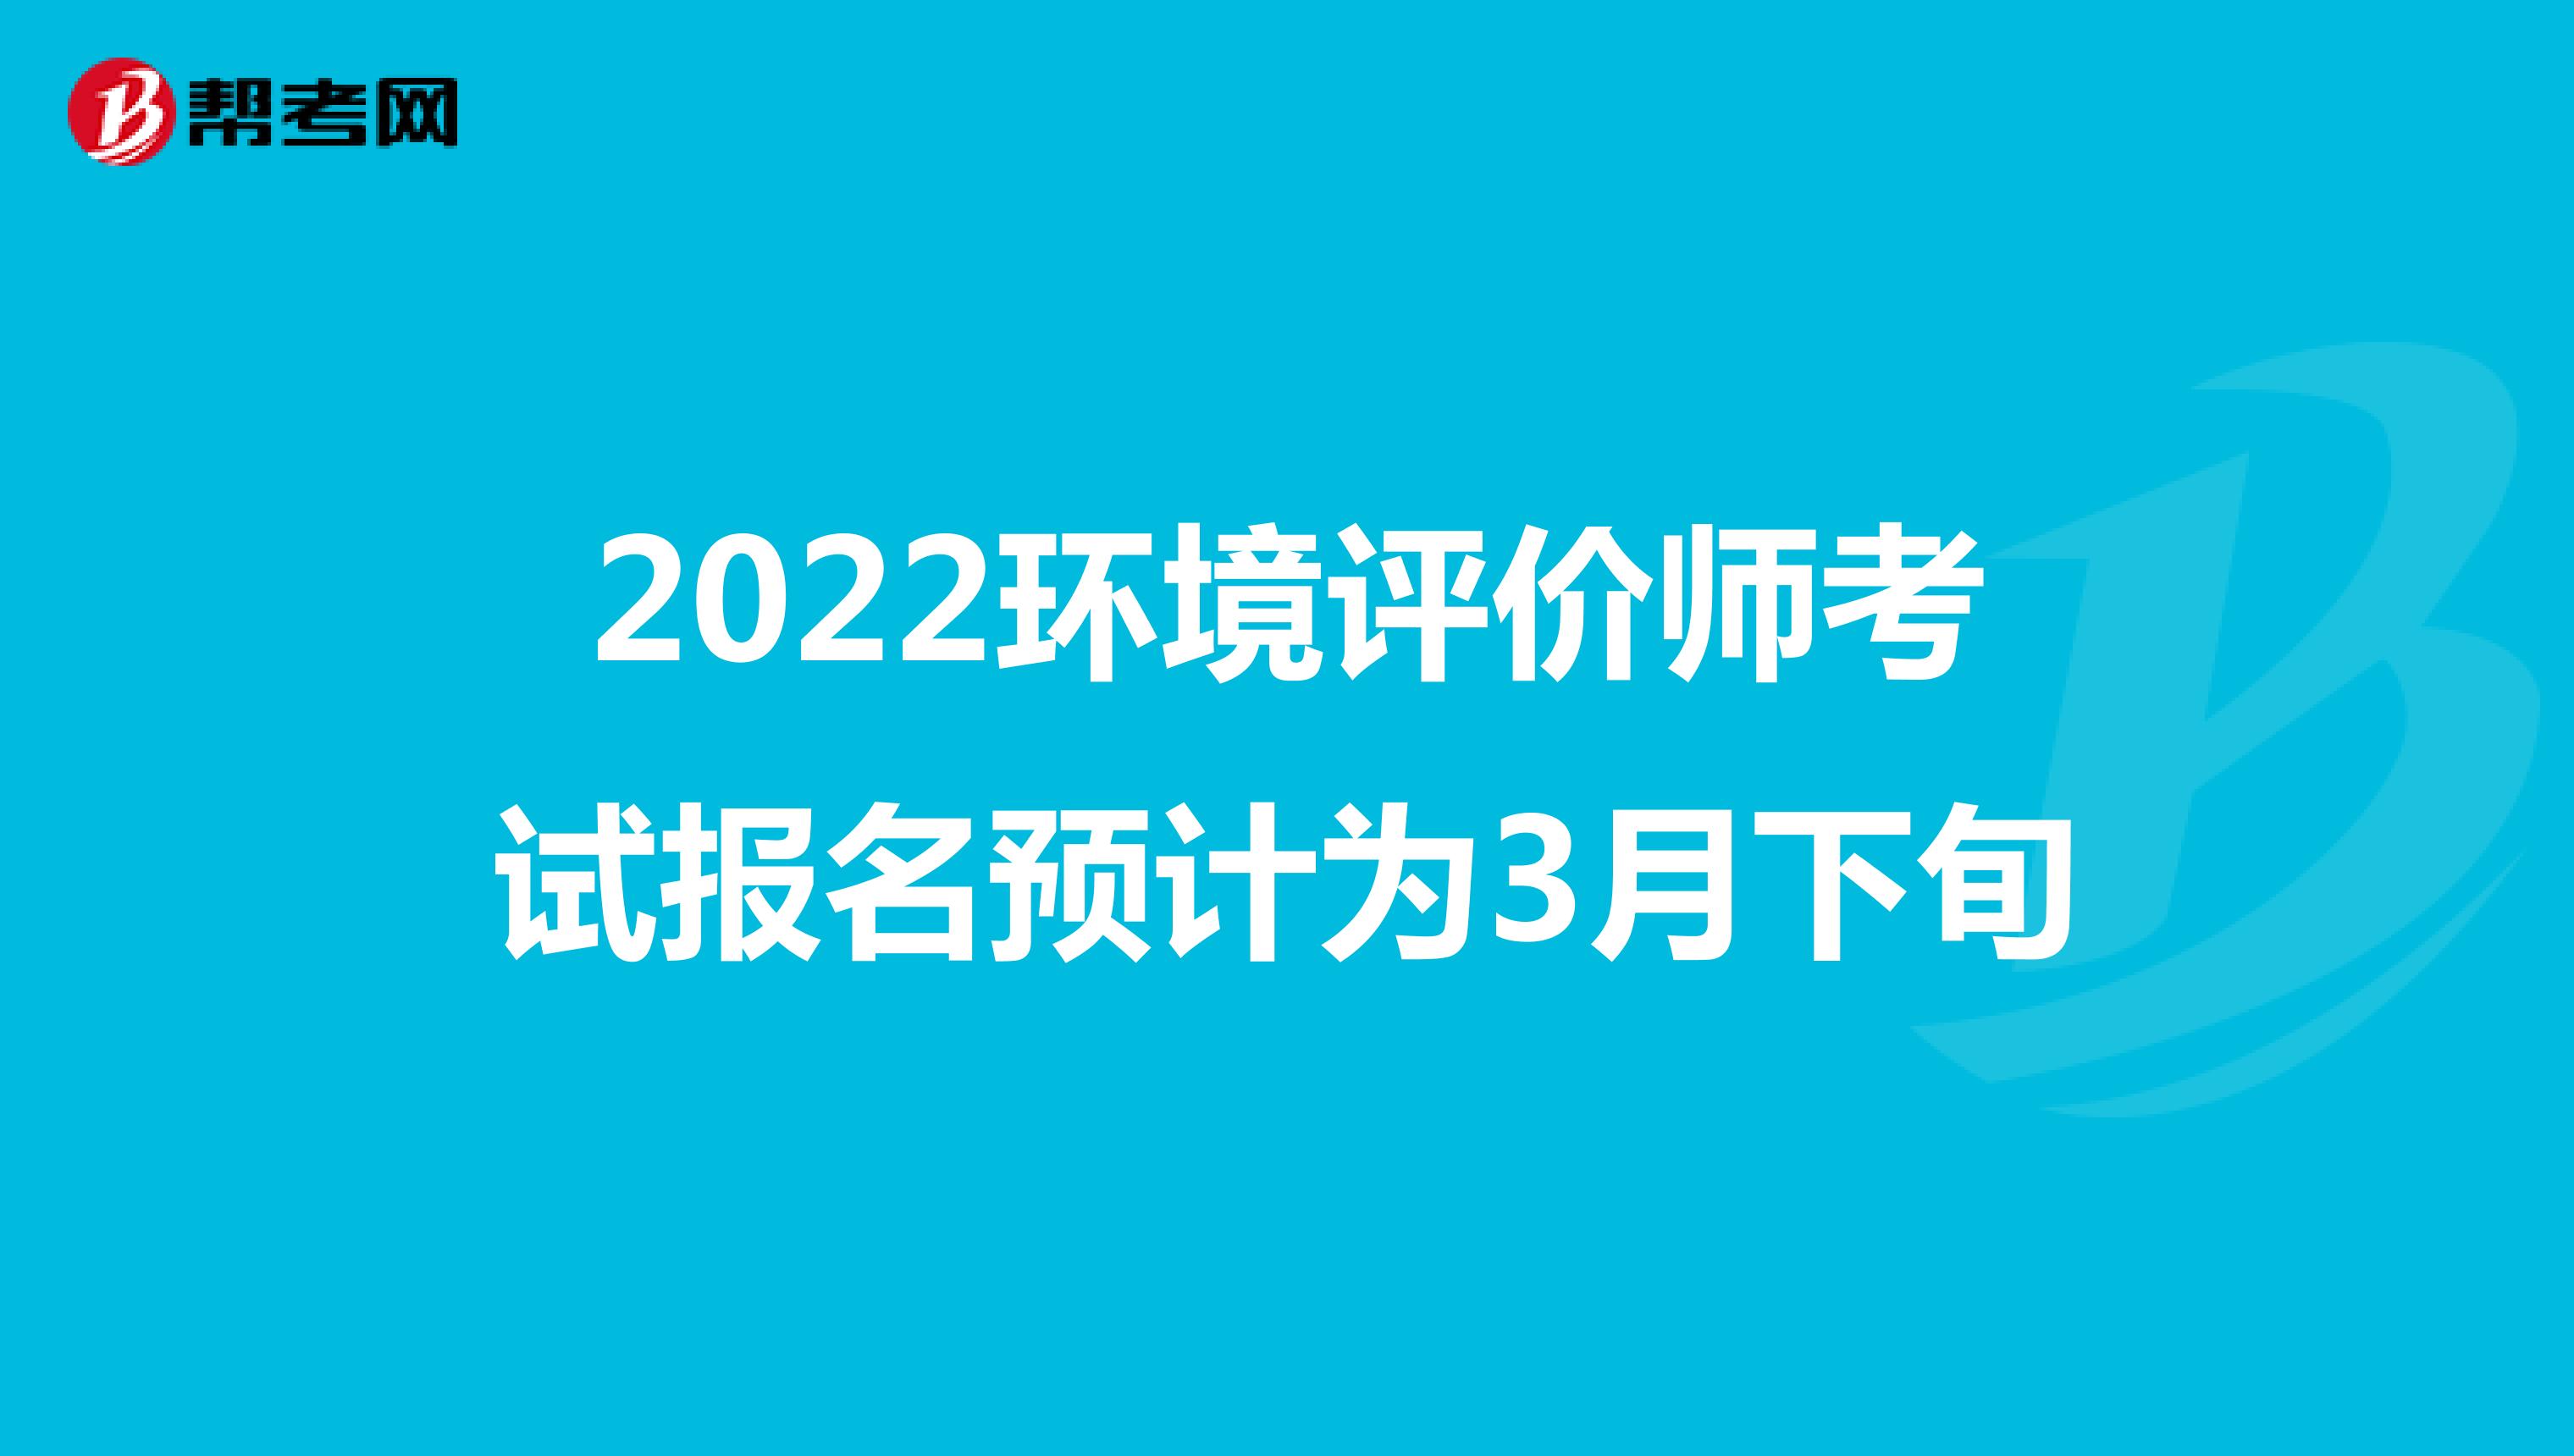 2022环境评价师考试报名预计为3月下旬